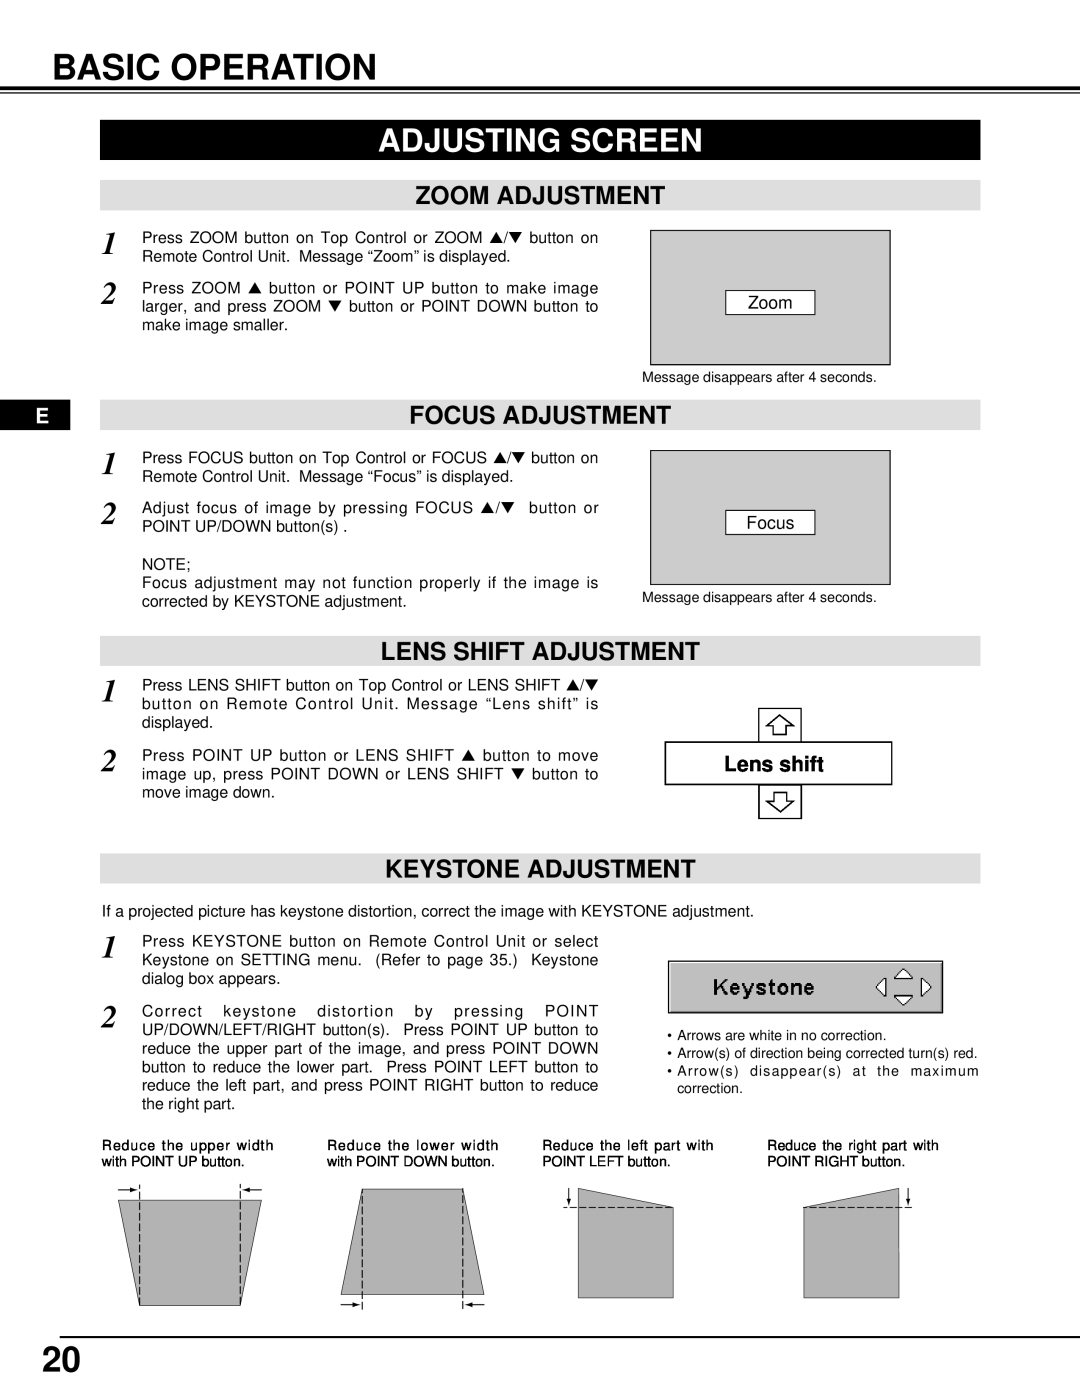 InFocus DP9295 manual Basic Operation, Adjusting Screen, Keystone Adjustment, Zoom Adjustment, Lens Shift Adjustment 